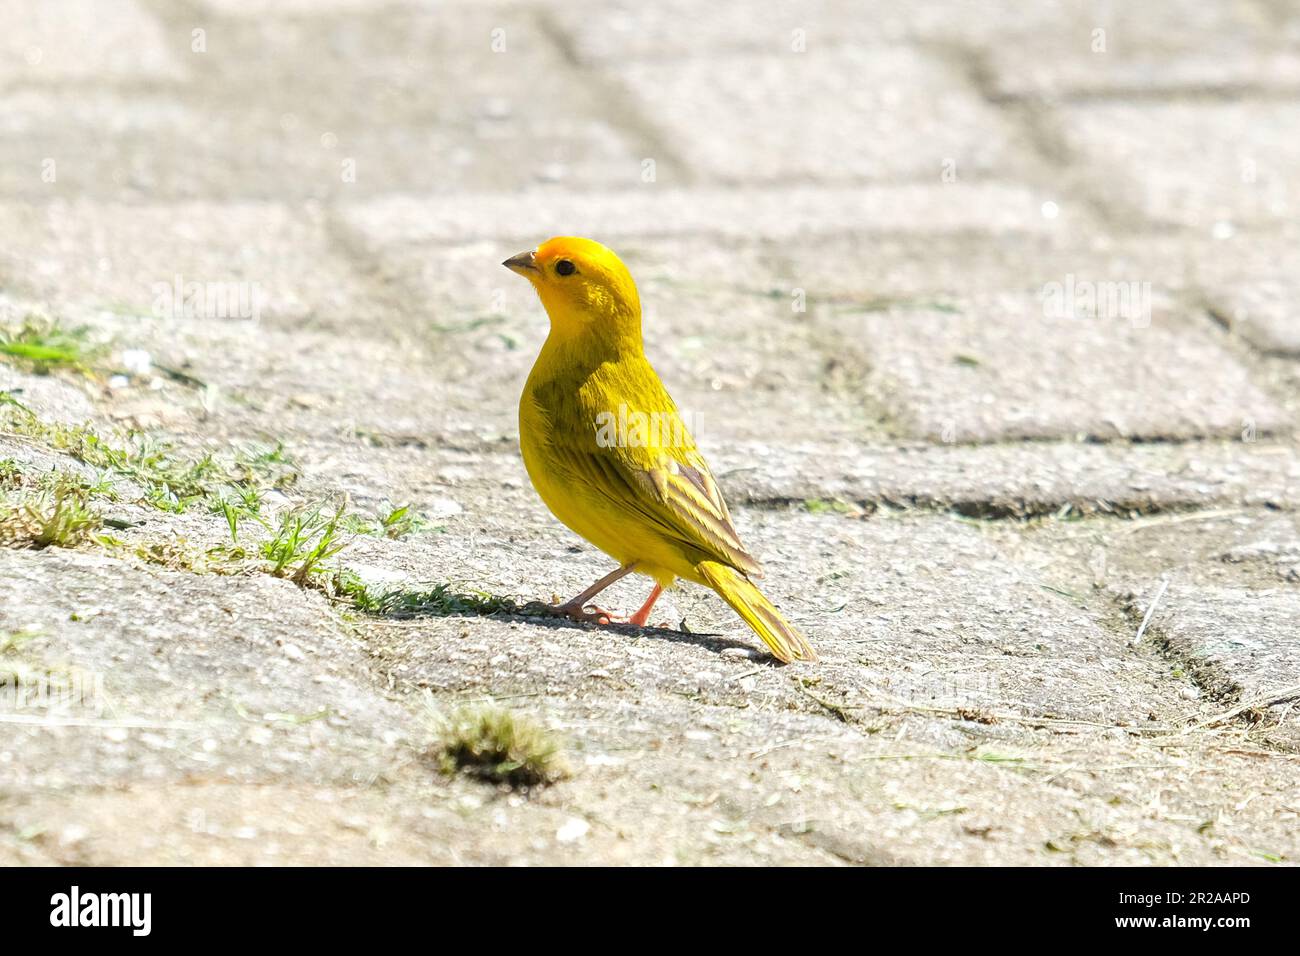 Nahaufnahme des kleinen gelblichen kanarienfinkens, der auf dem Boden steht. Selektivfokus des gelben Vogels. Stockfoto